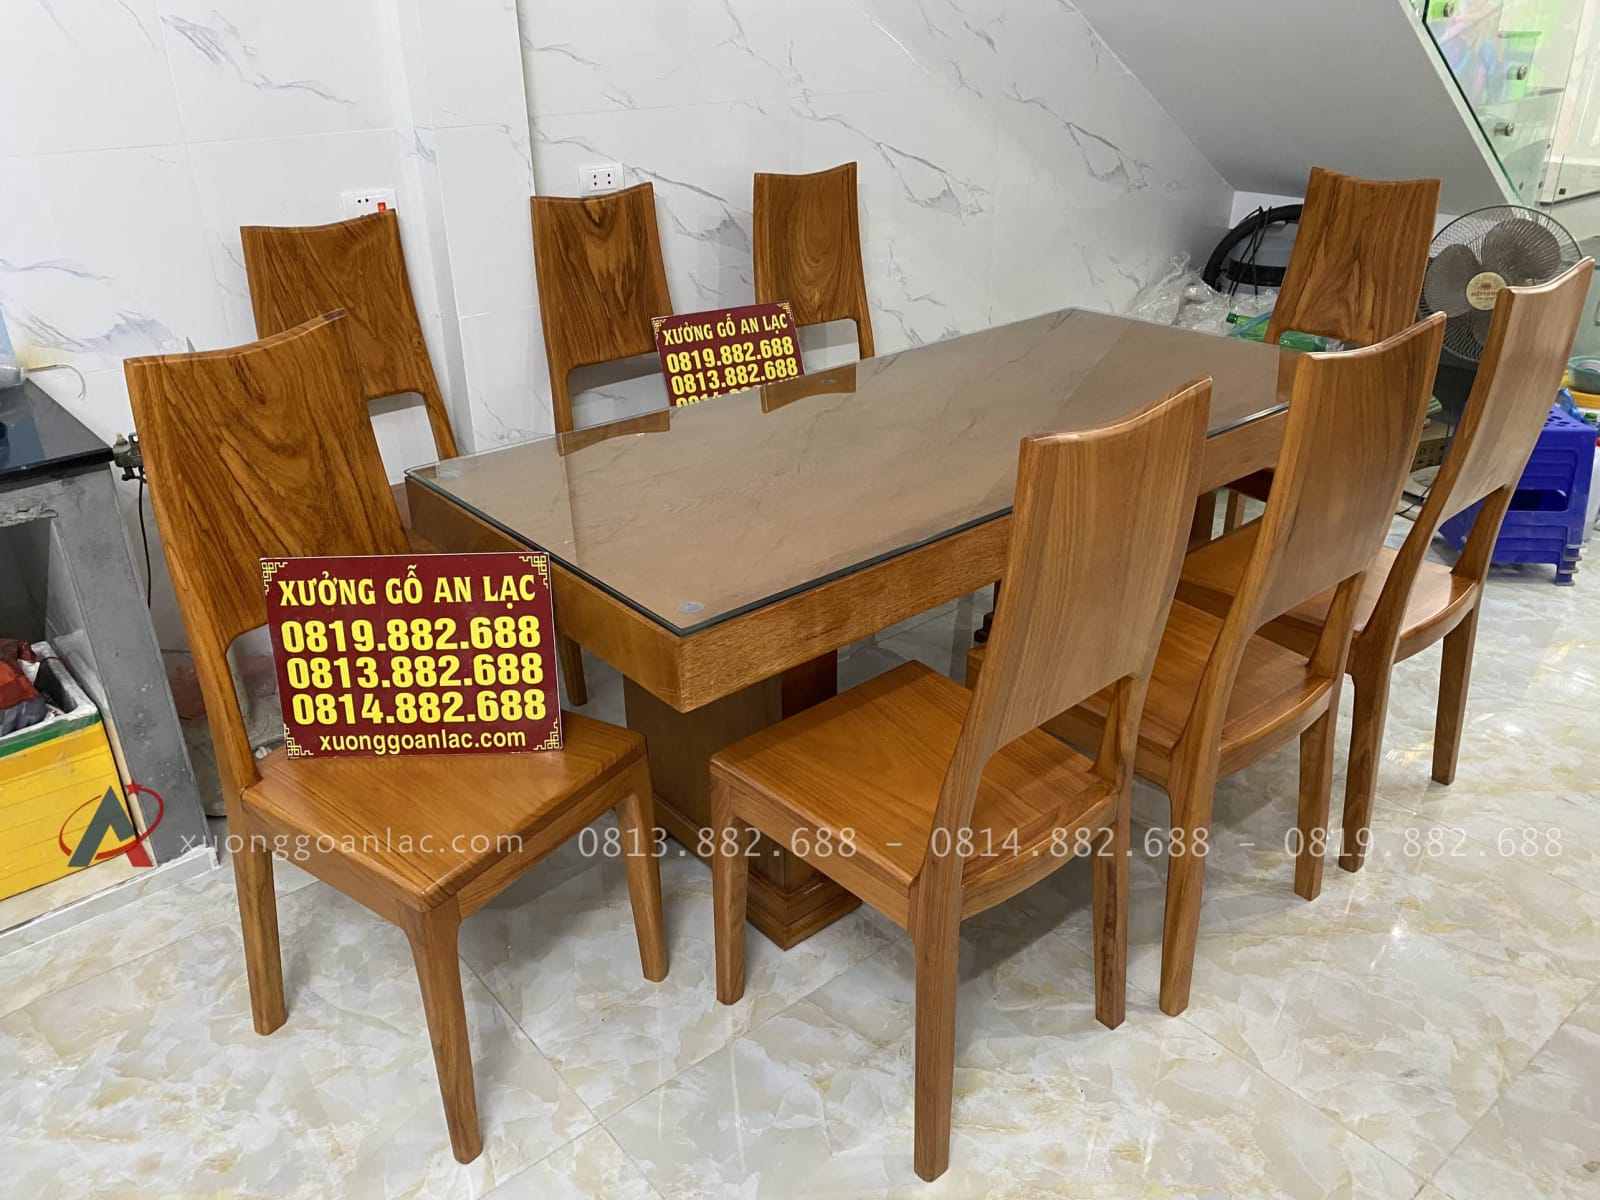 Tuyển tập những bộ bàn ăn 8 ghế hiện đại đẹp đẳng cấp - BepBep.vn